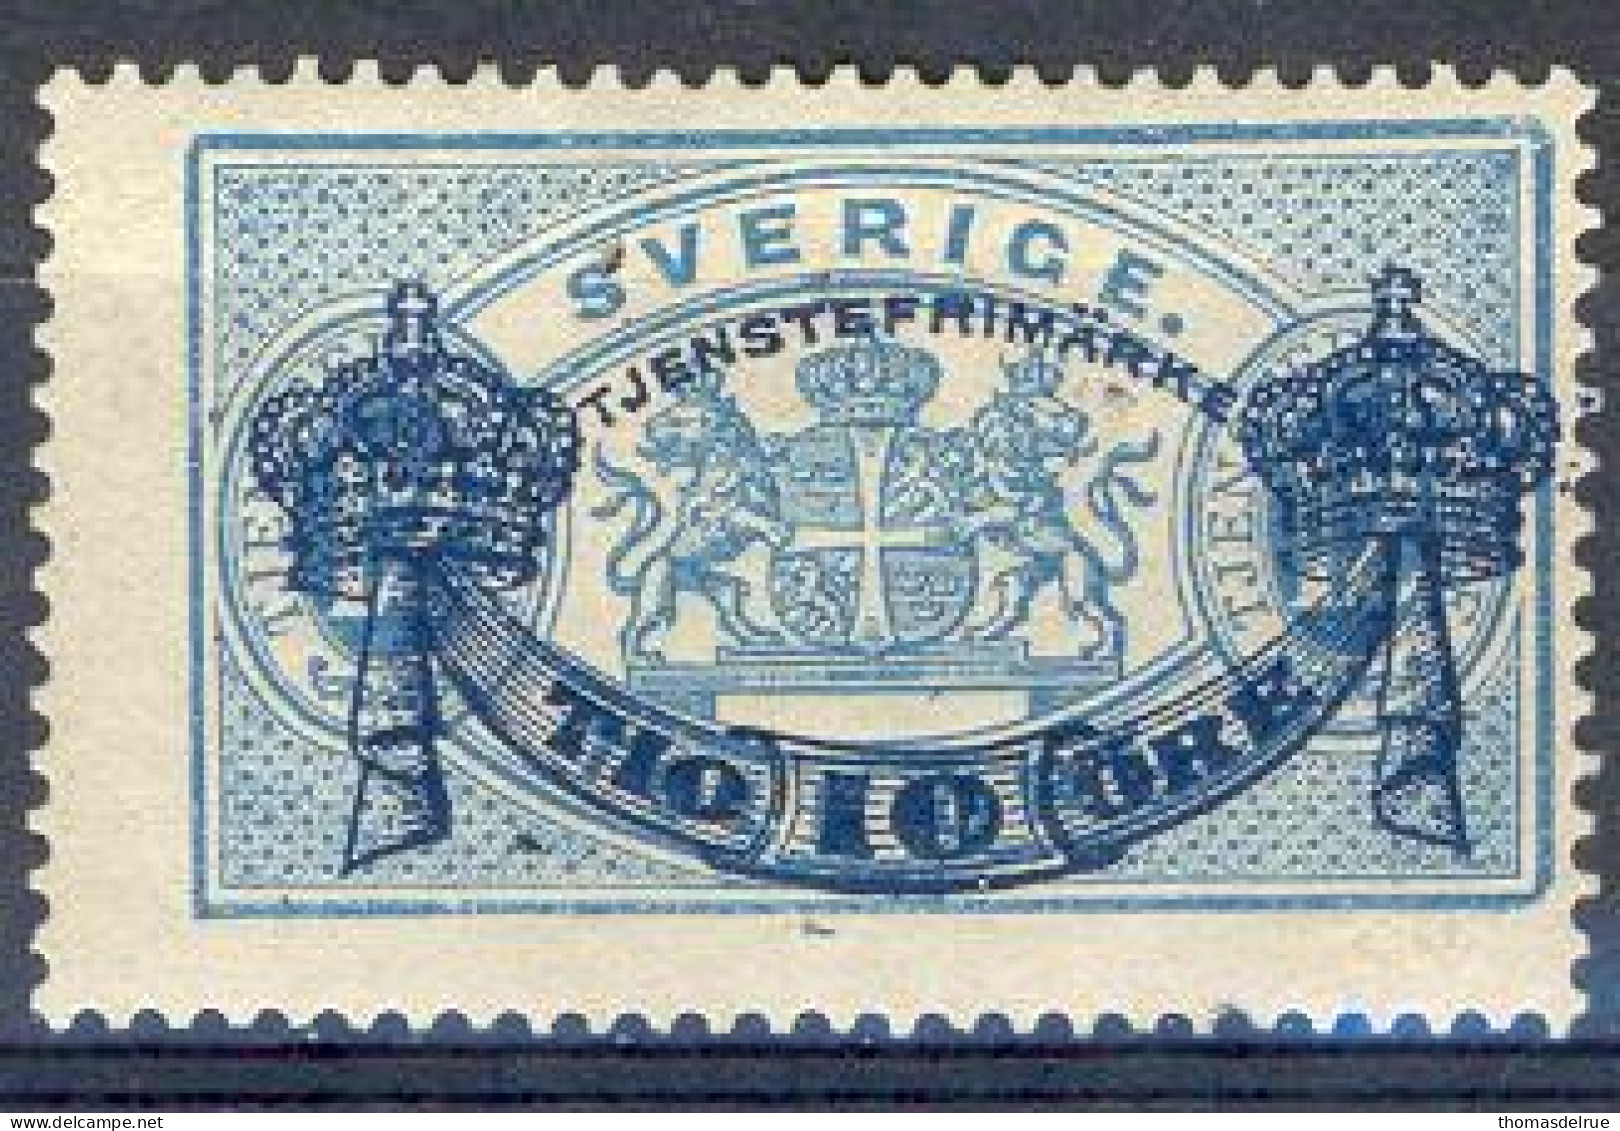 Fv1139: SVERIGE:Y.&T.N° S13 - Dienstmarken